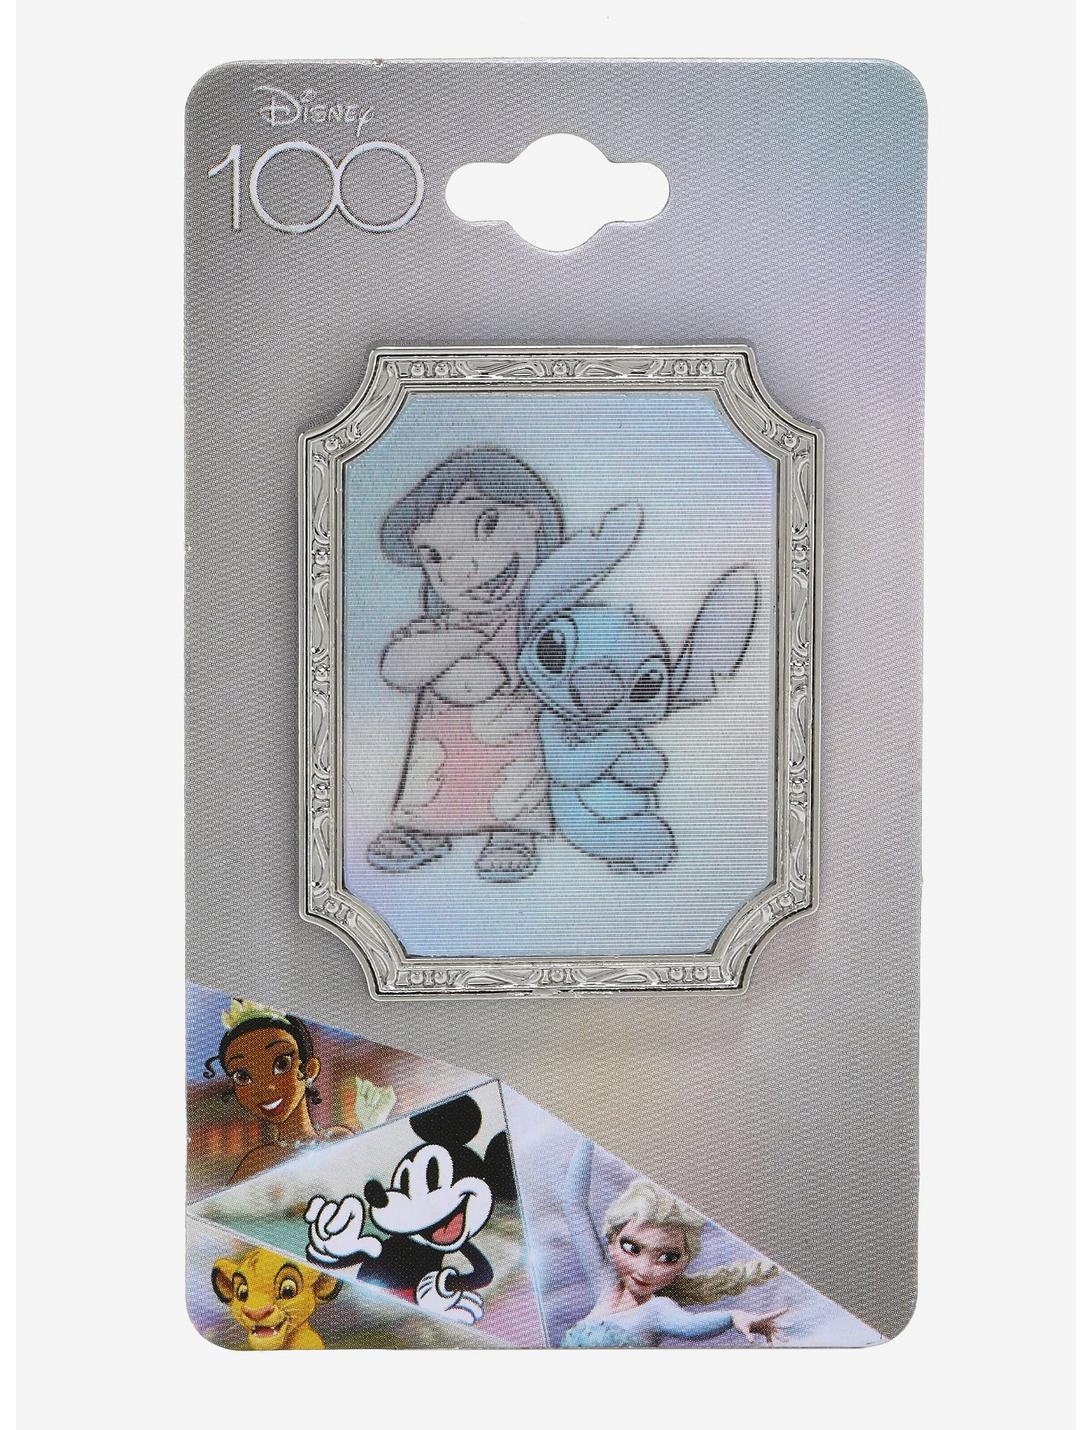 Loungefly Disney100 Lilo & Stitch Sketch Lenticular Pin - BoxLunch